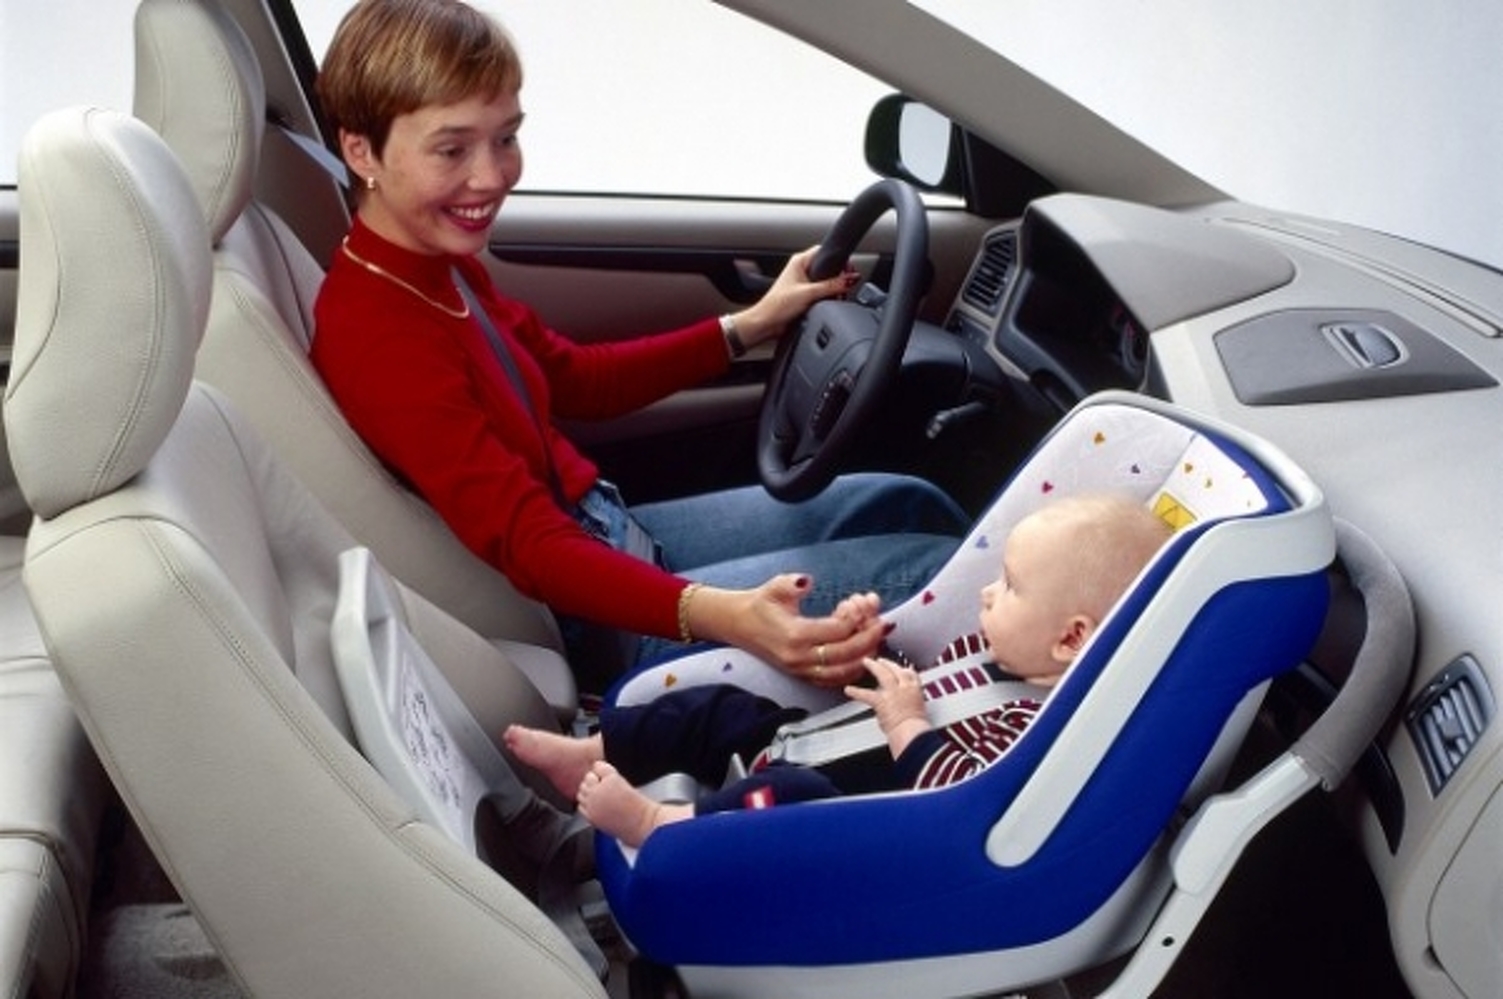 Можно автолюльку ставить на переднее сидение. Детское кресло в машину. Детское кресло на переднем сиденье автомобиля. Кресло для перевозки детей в автомобиле. Детское кресло впереди в авто.